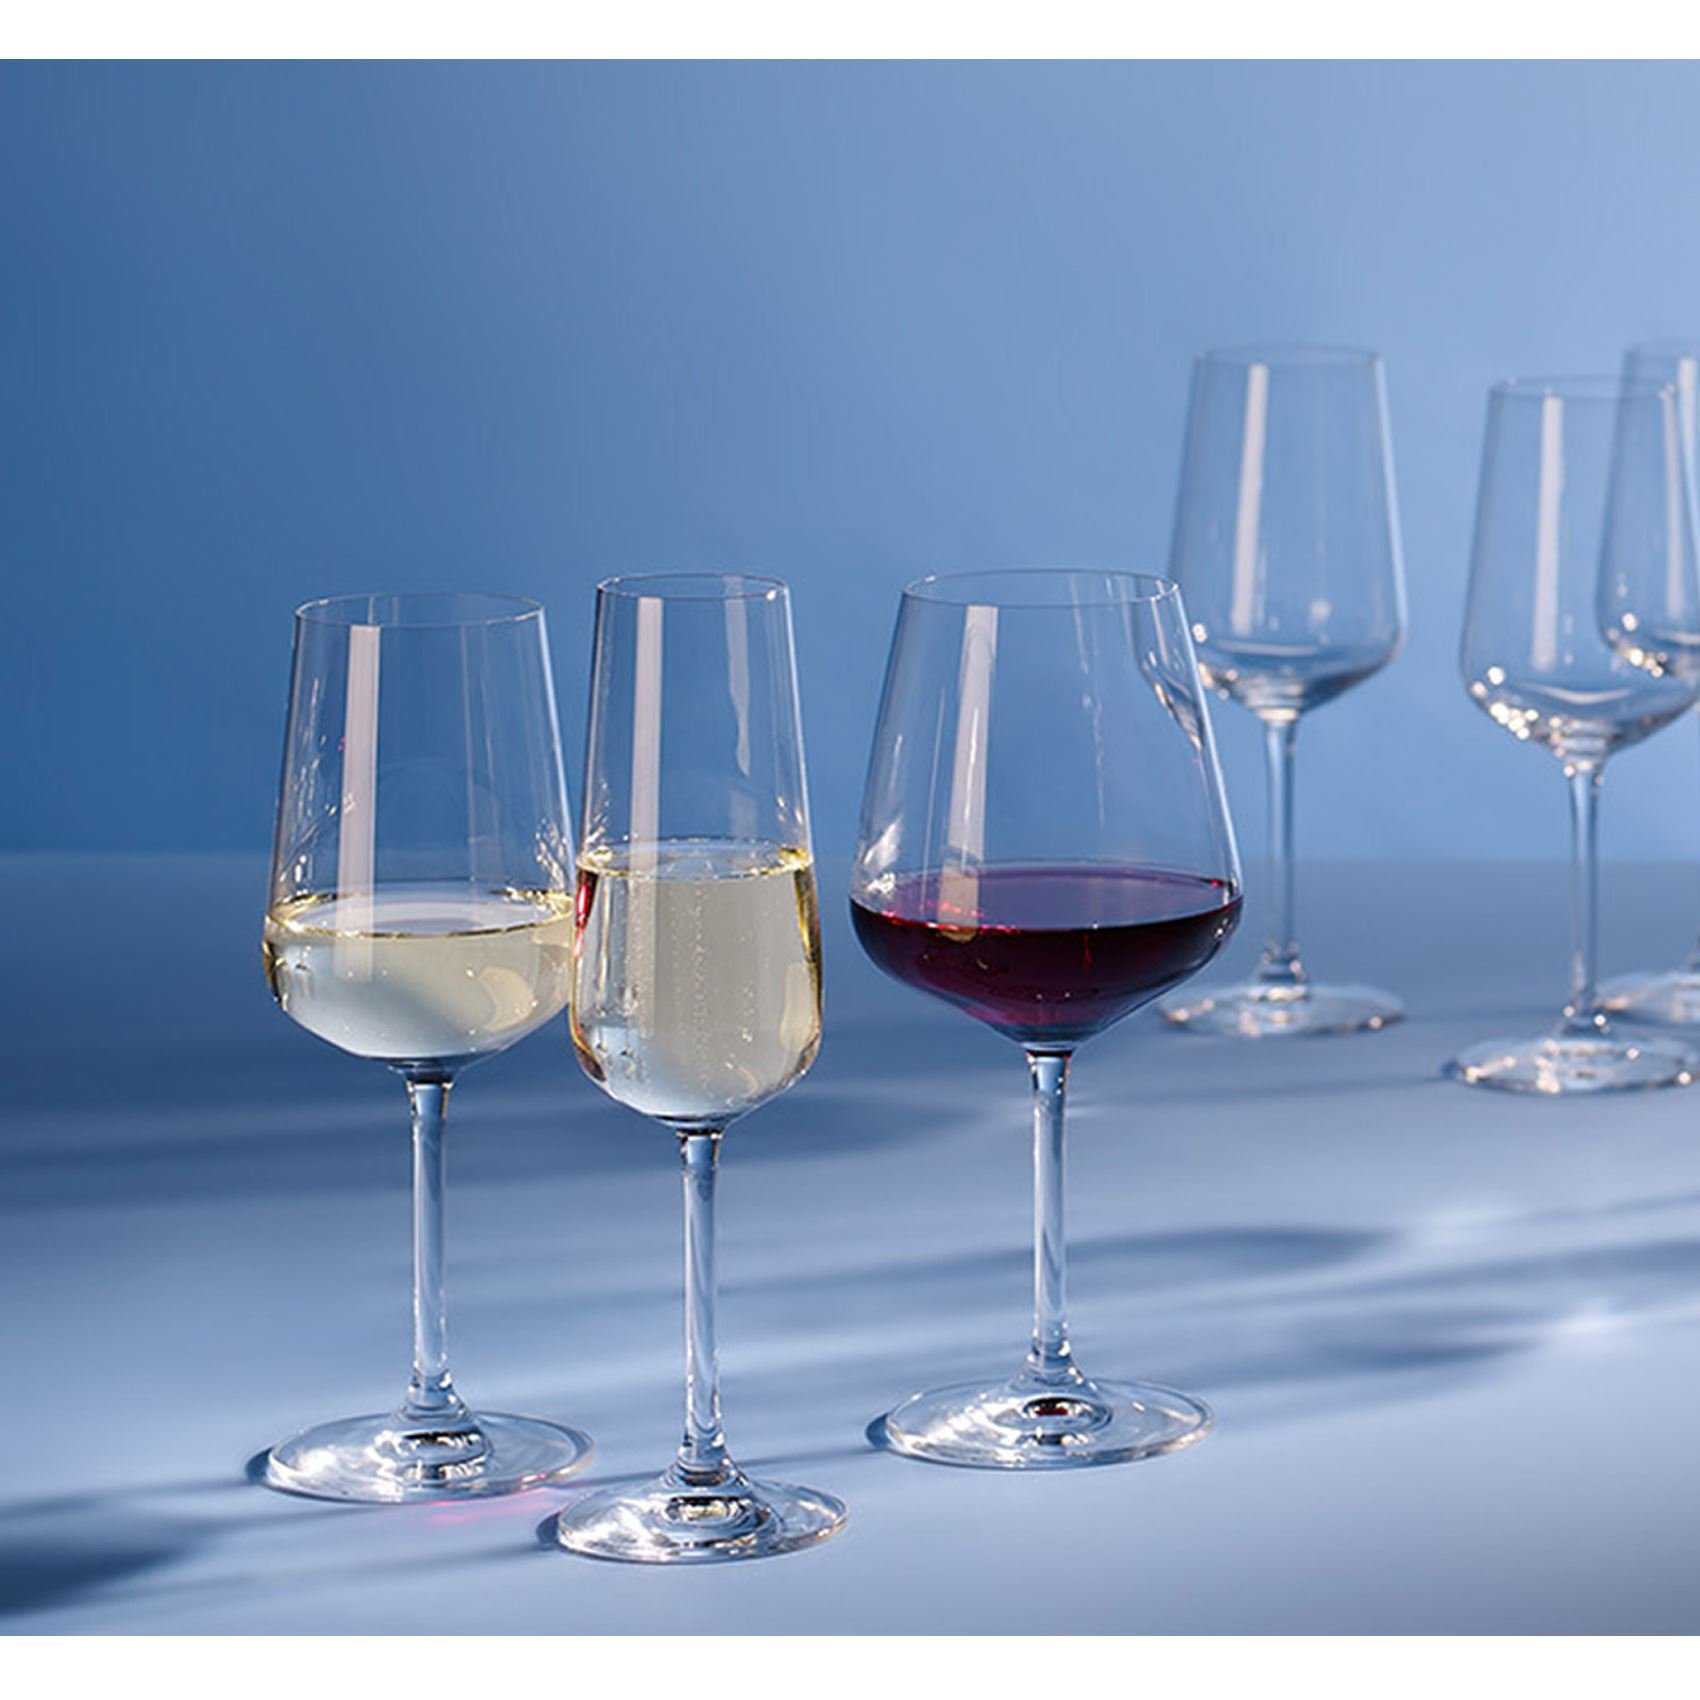 Aanhankelijk veelbelovend Spotlijster Actie: Villeroy & Boch Ovid wijn-, water- en champagneglazen